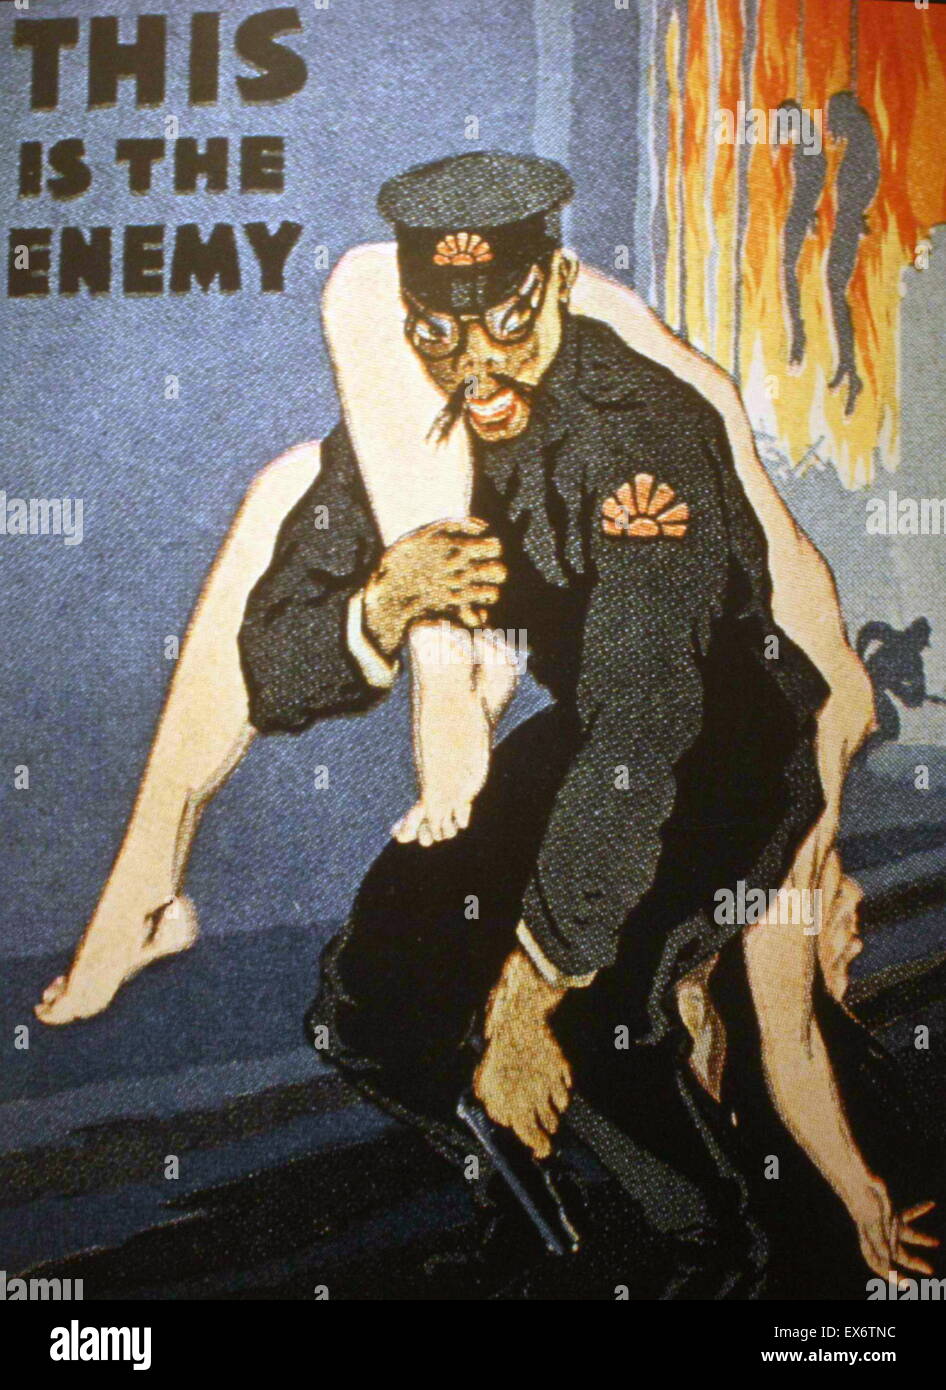 cartel propagandístico anti japanese este es el enemigo 1942